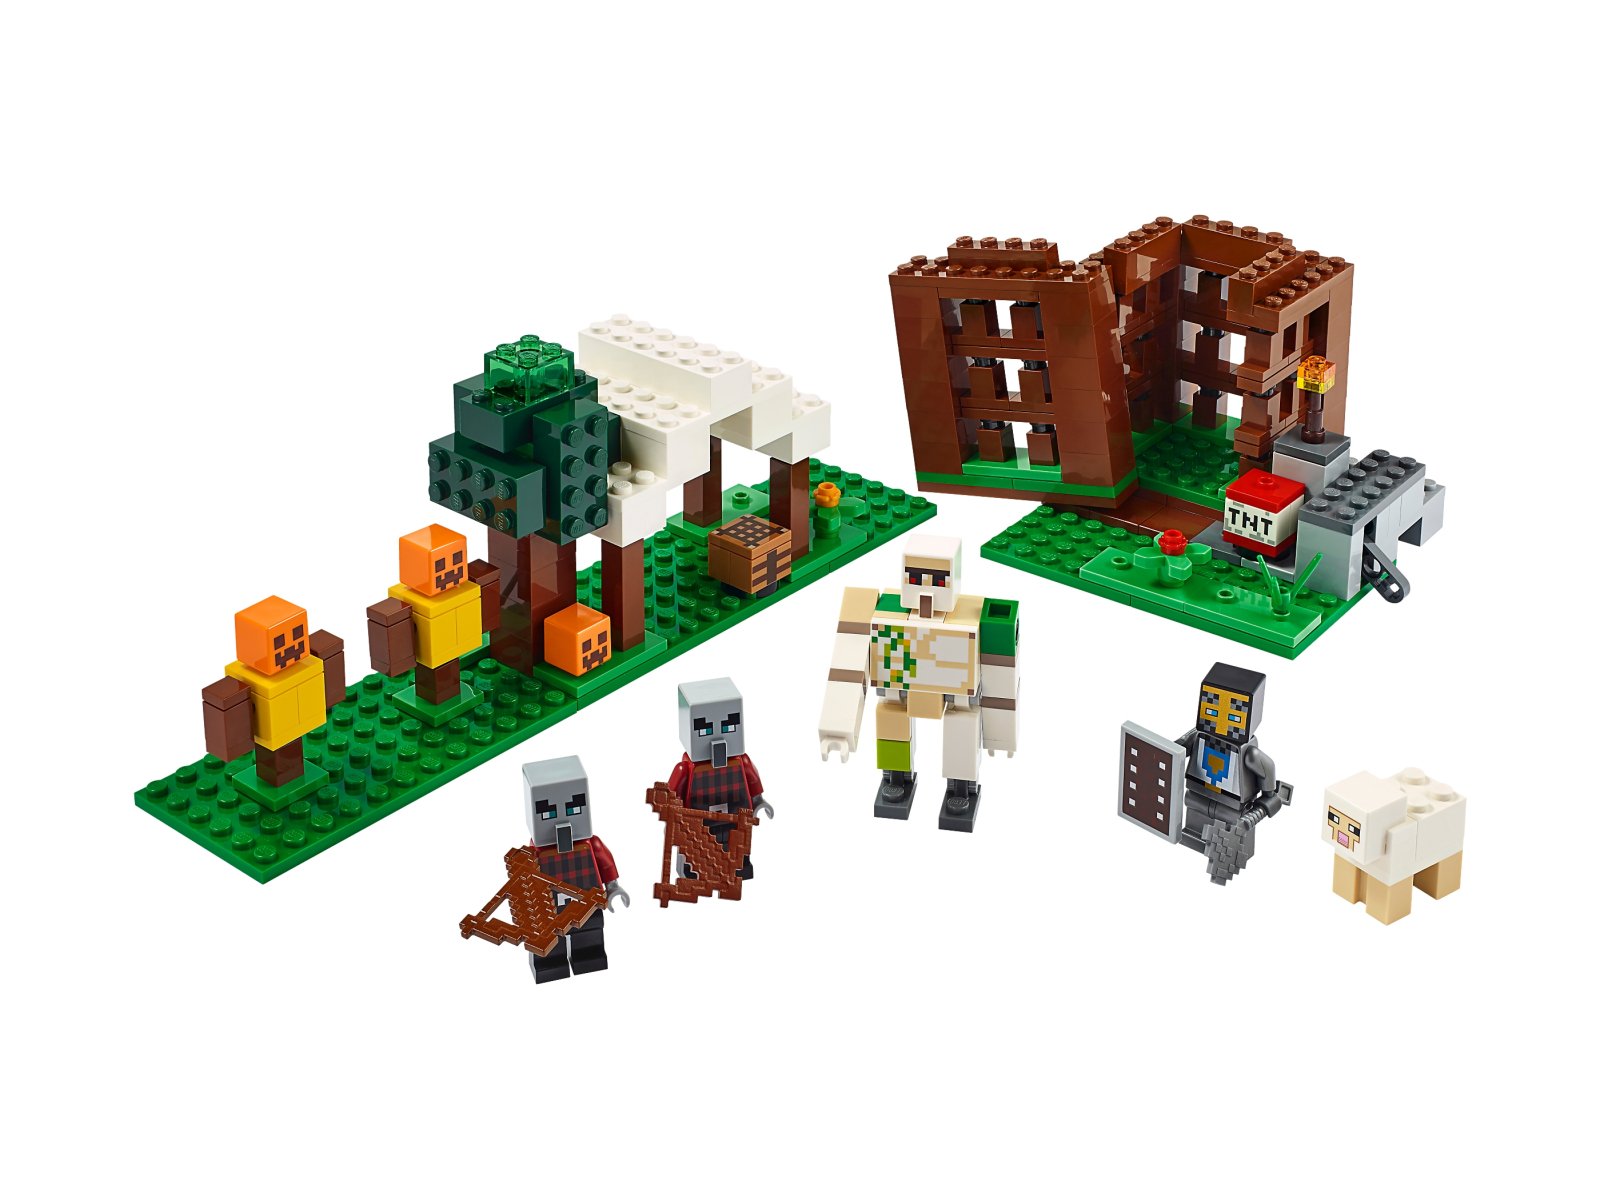 LEGO Minecraft Kryjówka rozbójników 21159